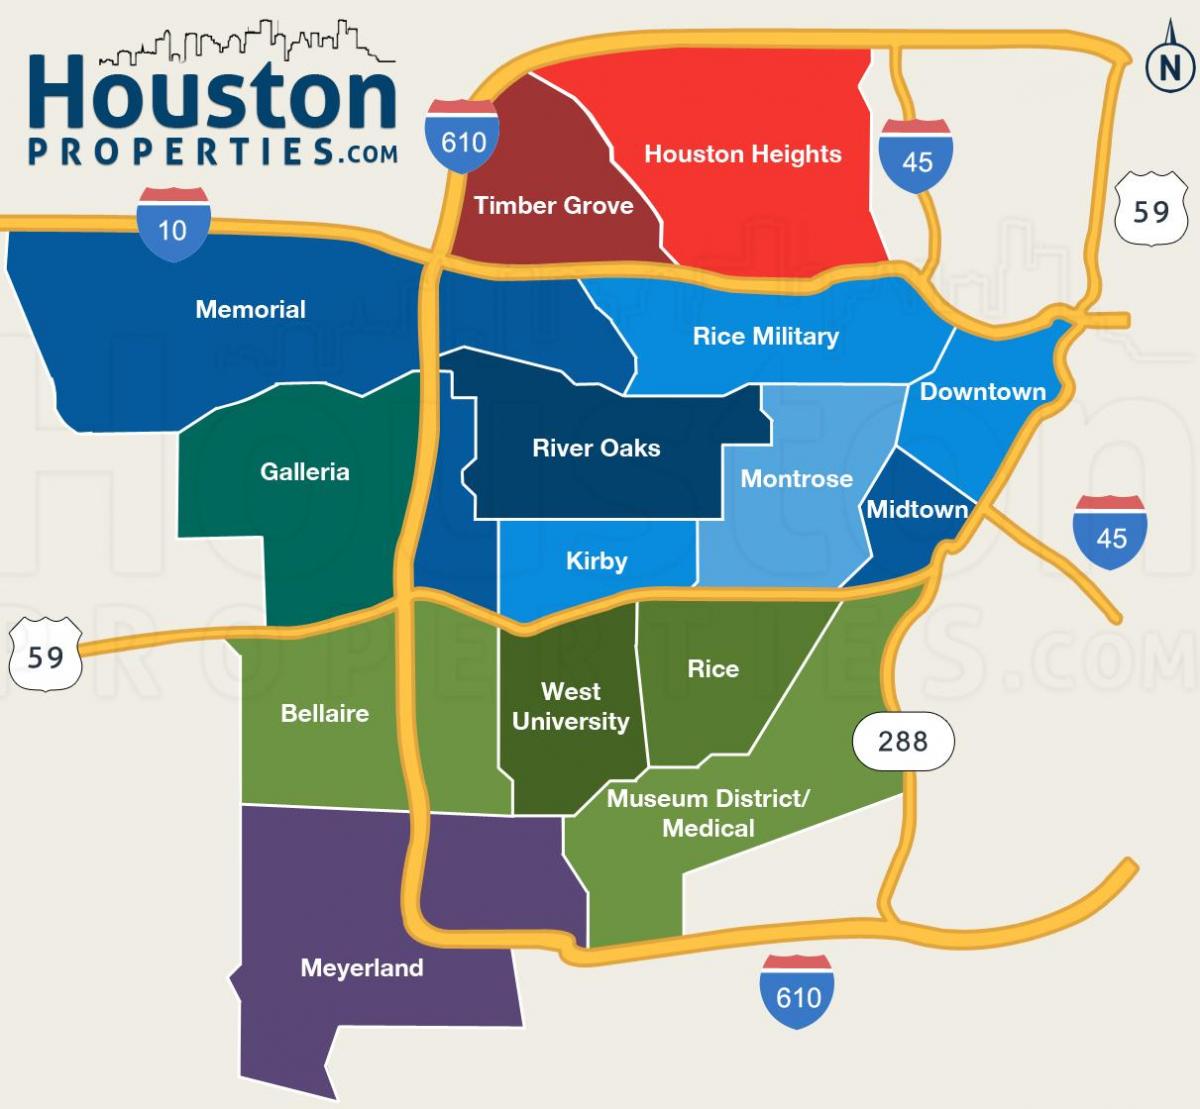 kort over Houston kvarterer